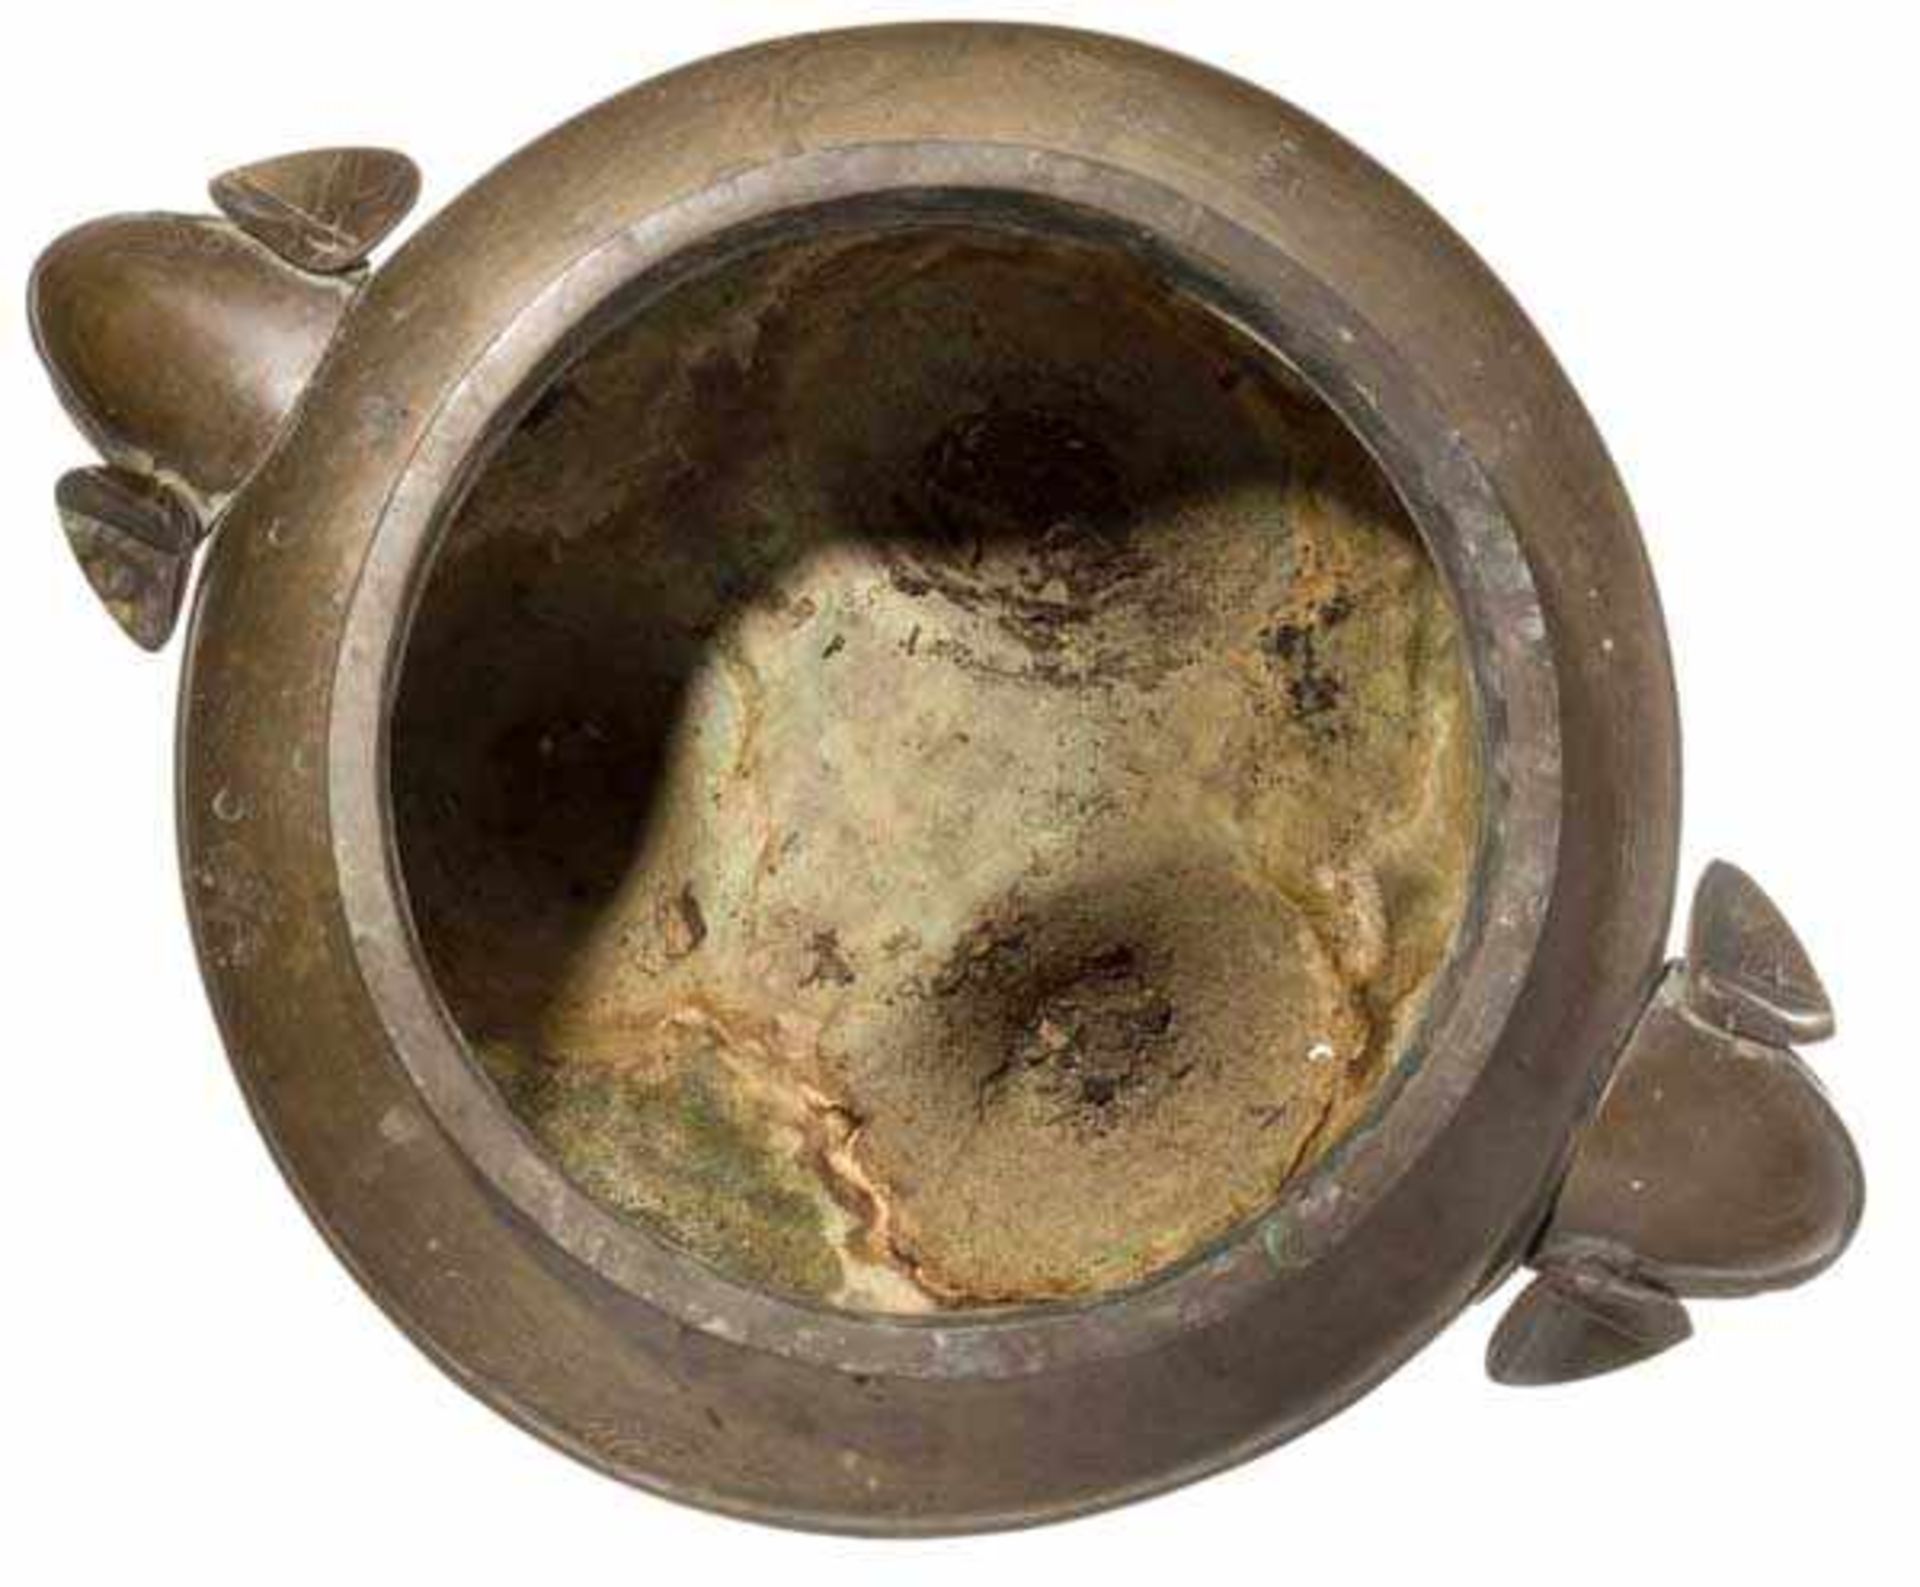 Bronzegefäß mit Silbereinlagen, China, 19. Jhdt. Bauchiges Gefäß auf drei kurzen Standbeinen. - Bild 3 aus 9